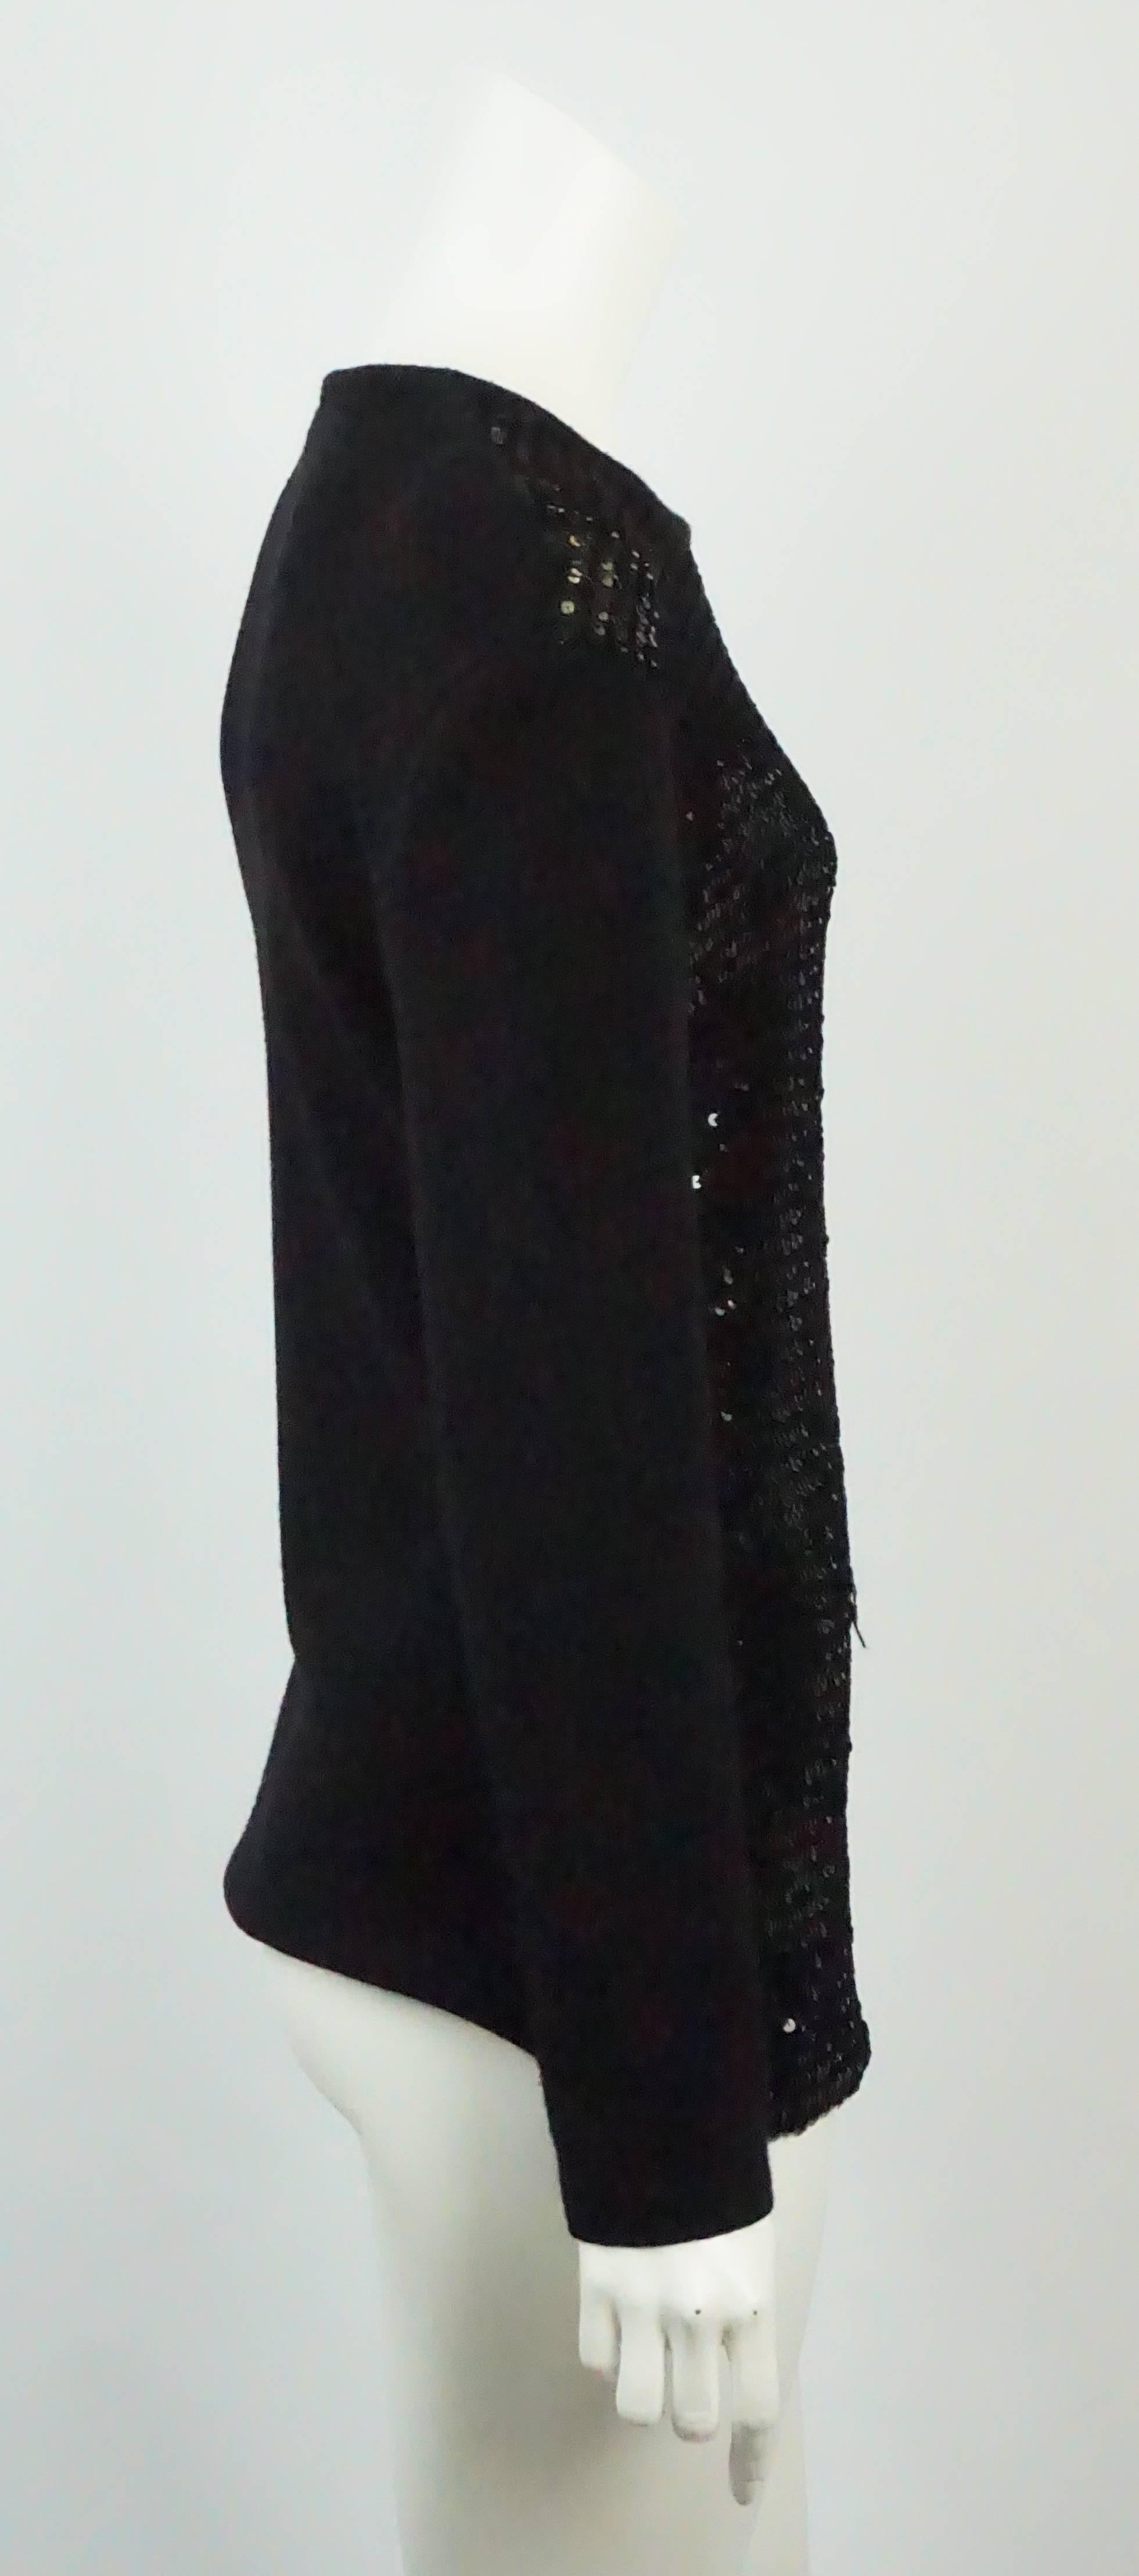 Yves Saint Laurent Schwarzer Pailletten-Pullover - M/L - Cirka 1990er Jahre  Dieser schöne und elegante schwarze Wollpullover ist in einem ausgezeichneten Vintage-Zustand. Der Pullover hat einen runden Ausschnitt und ist auf der gesamten Vorderseite